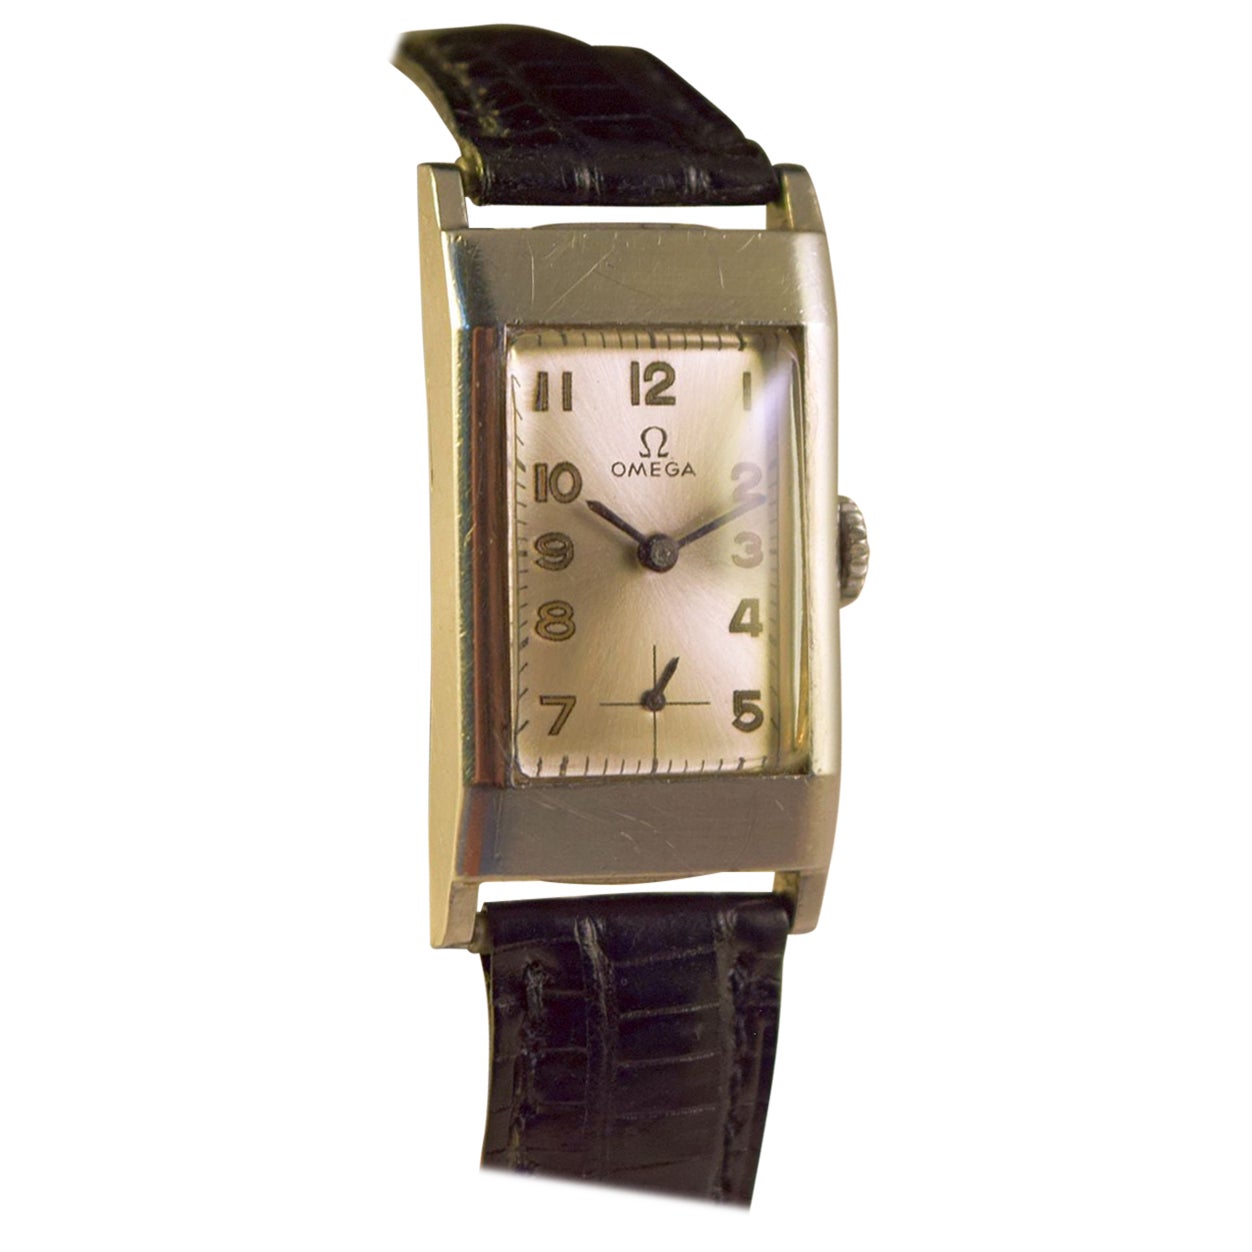 Omega Rectangular Unique Watch Steel Cased Rare Example